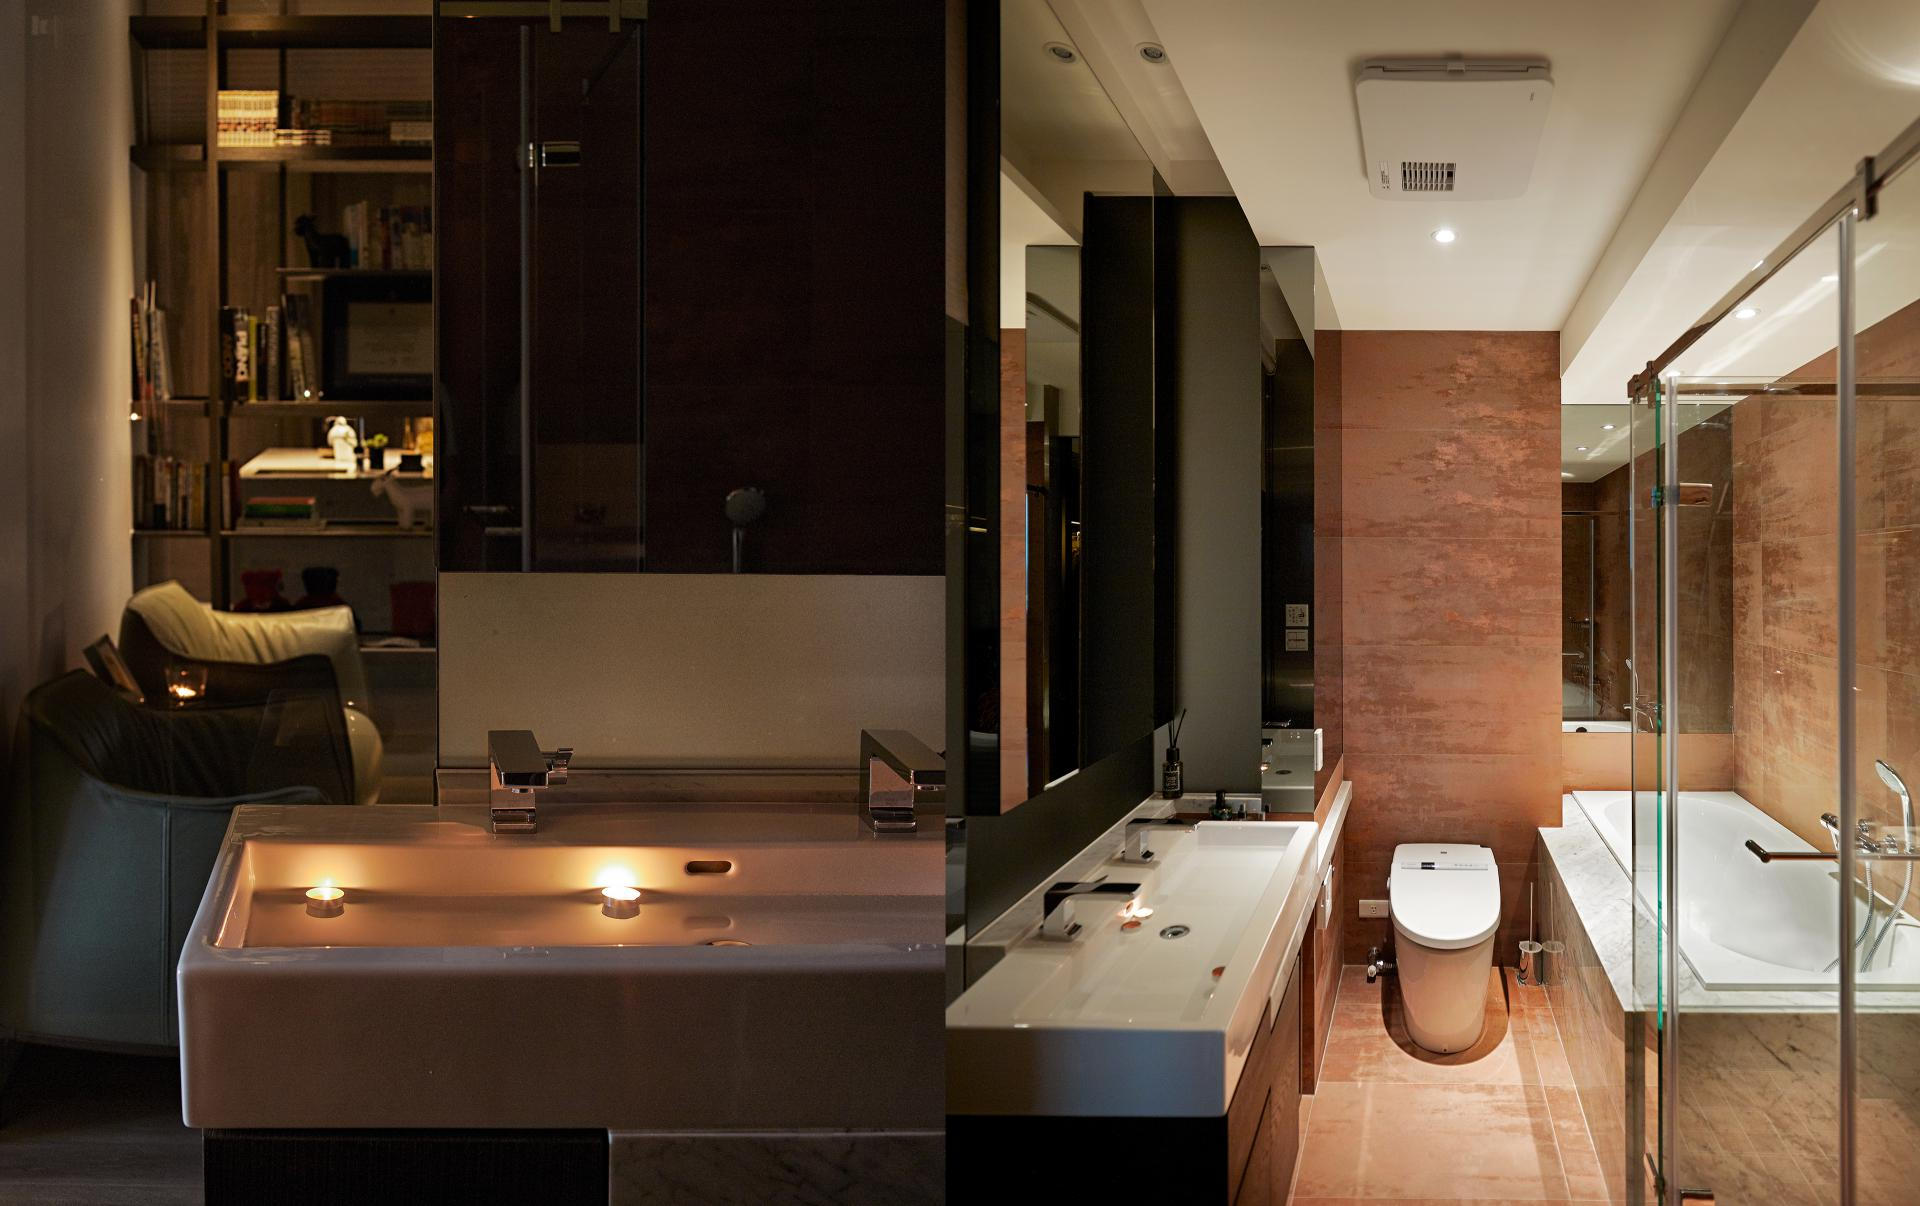 Wedo thiết kế nội thất phòng tắm đẹp lấy cảm hứng từ thiên nhiên